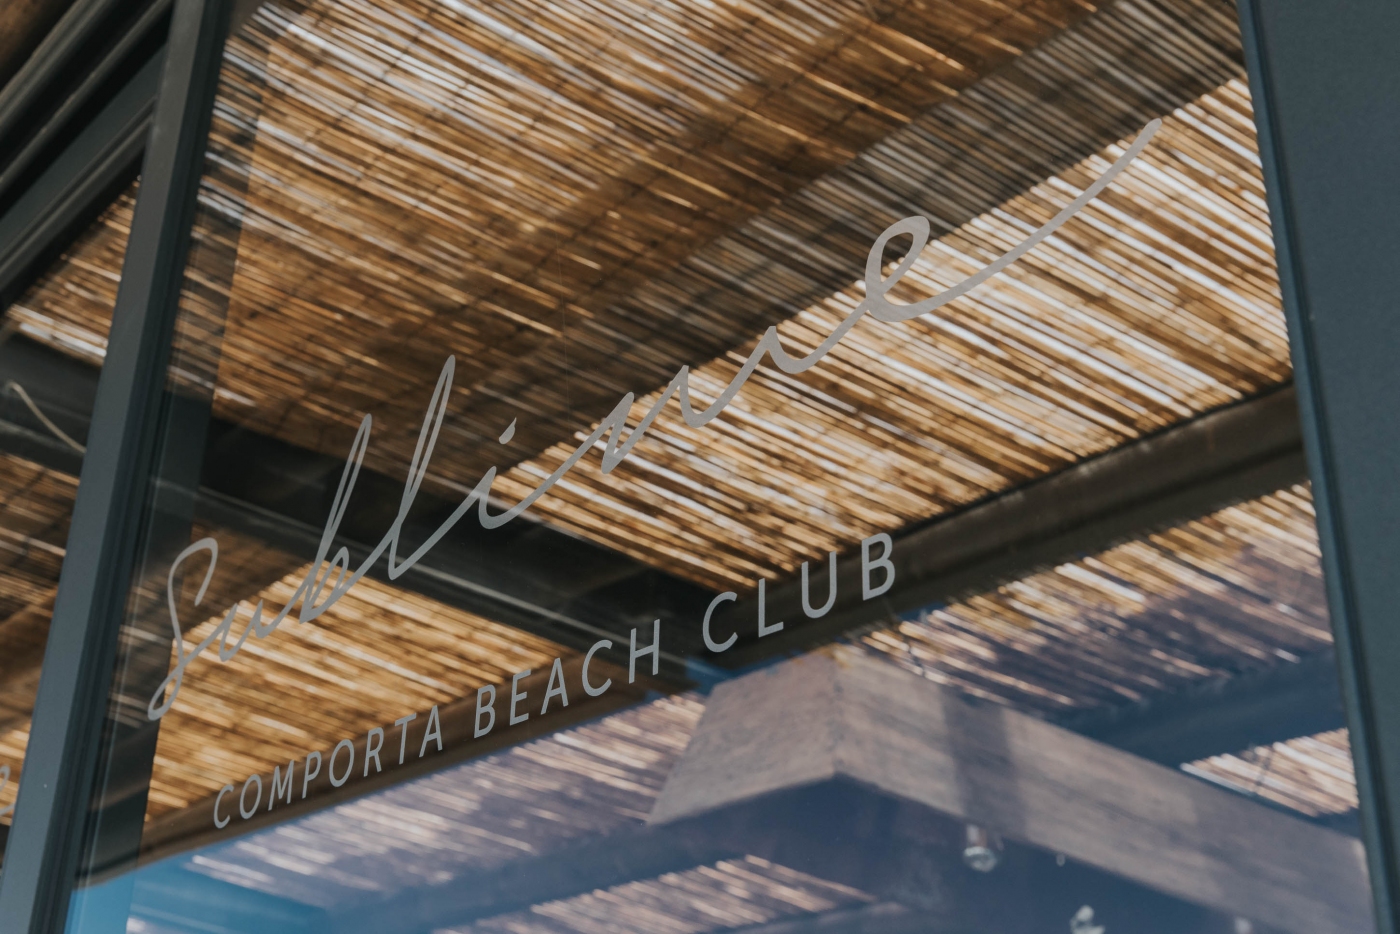 Testemunho Sublime Comporta Beach Club’  | Certificação Qualidade e Ambiente